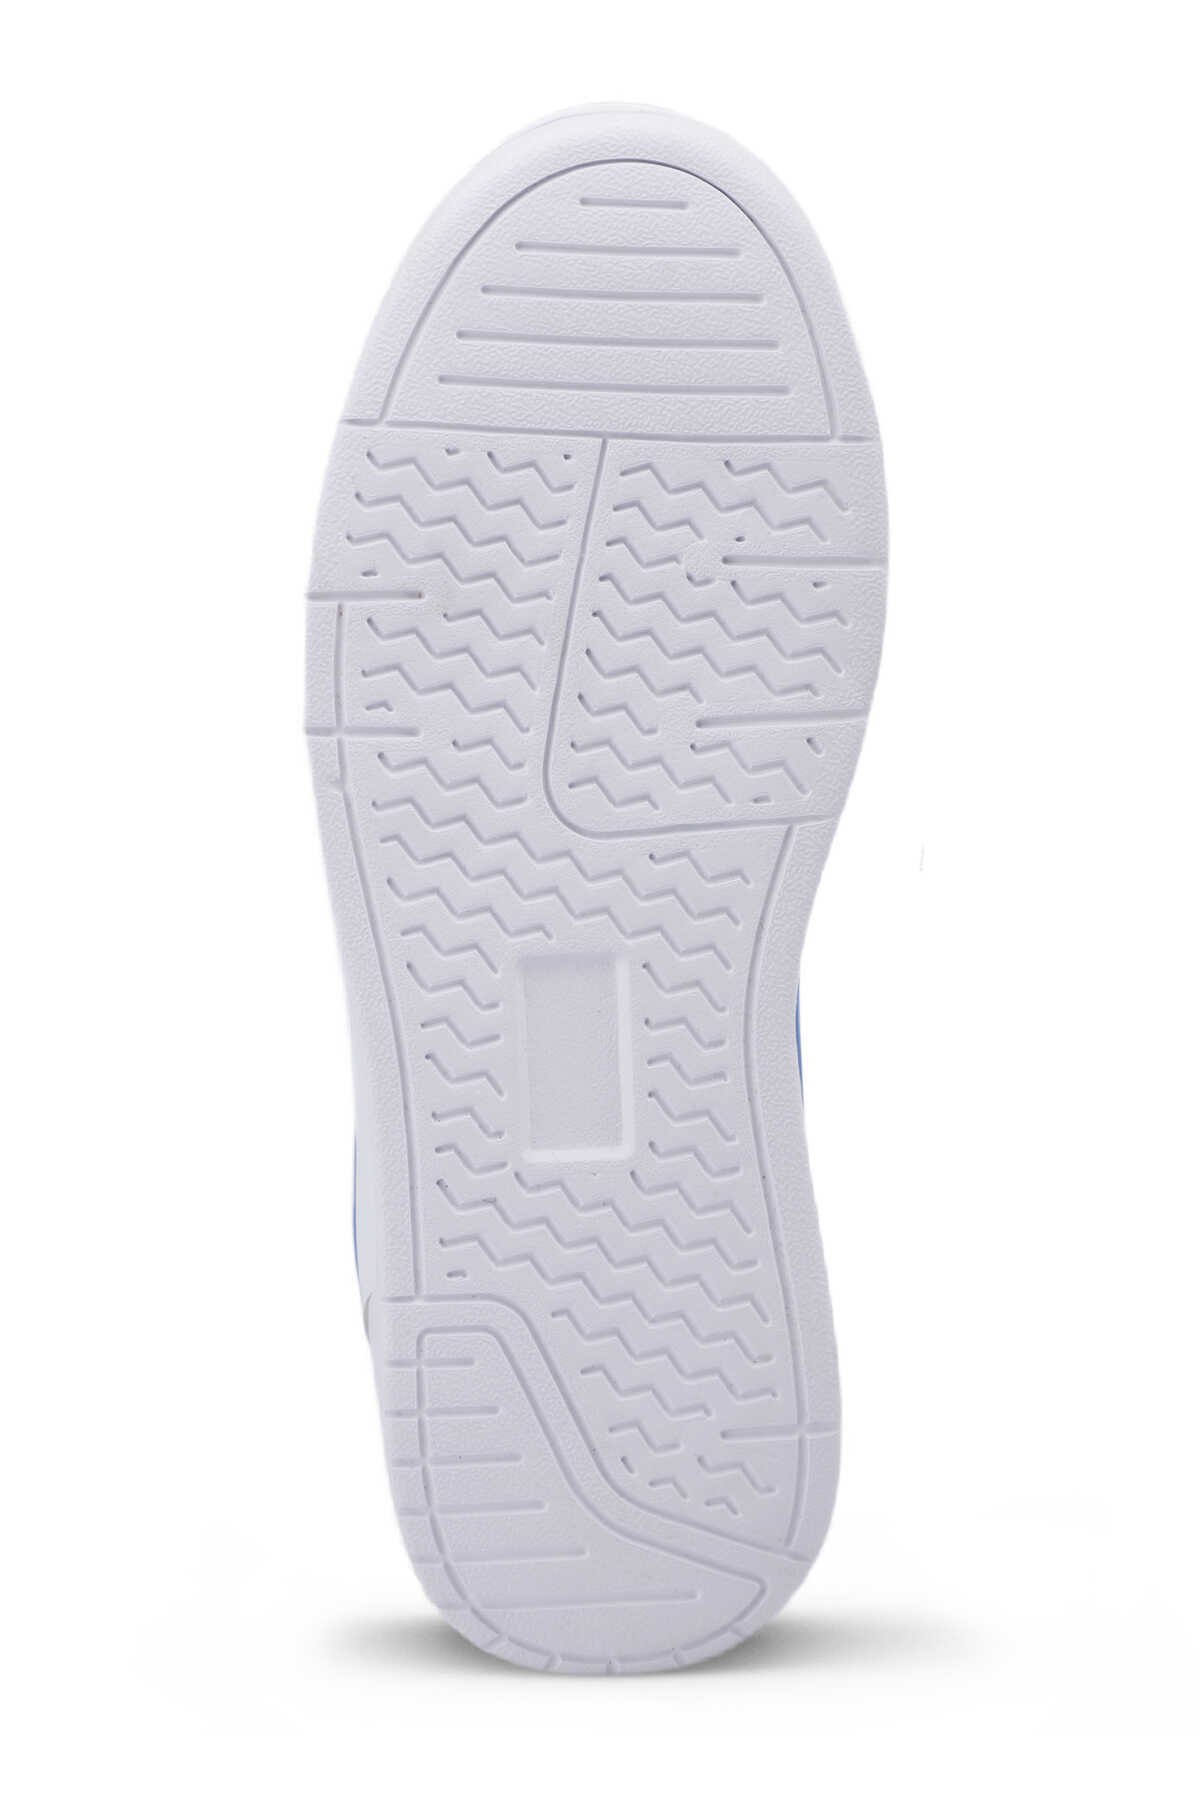 Slazenger BARBRO Sneaker Kadın Ayakkabı Beyaz / Turuncu